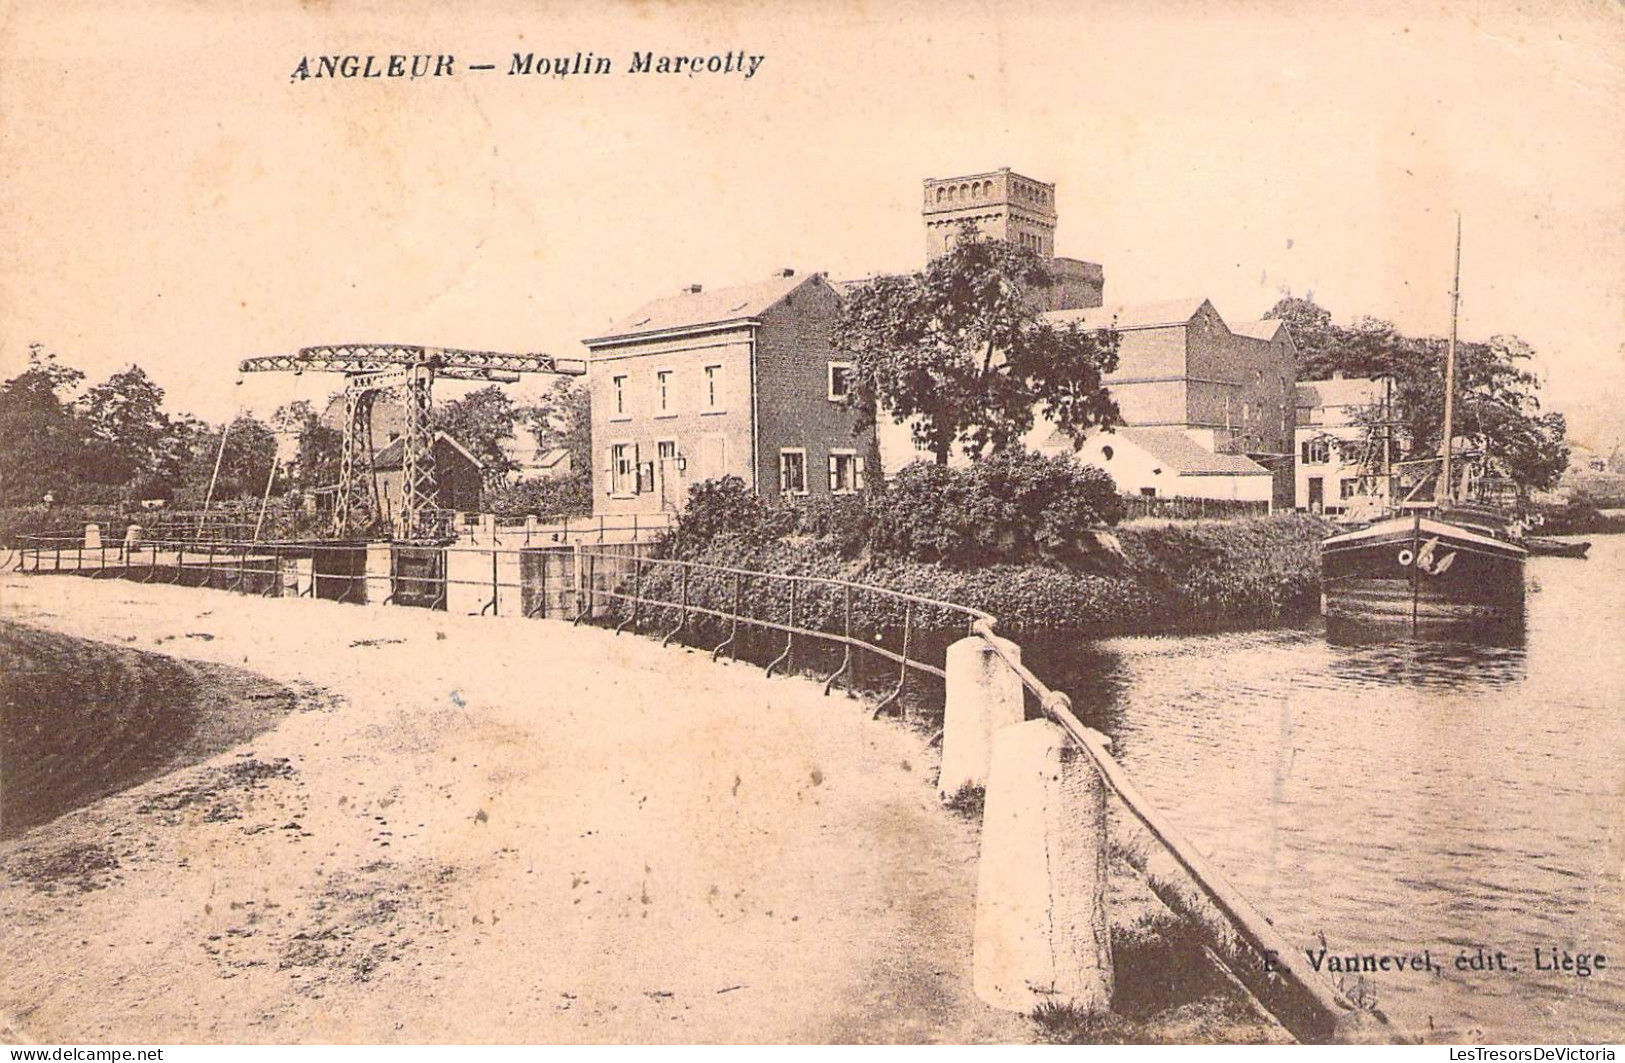 Belgique - Angleur - Moulin Marcotty - Edit. E. Vannevel - Canal - Péniche - Carte Postale Ancienne - Lüttich